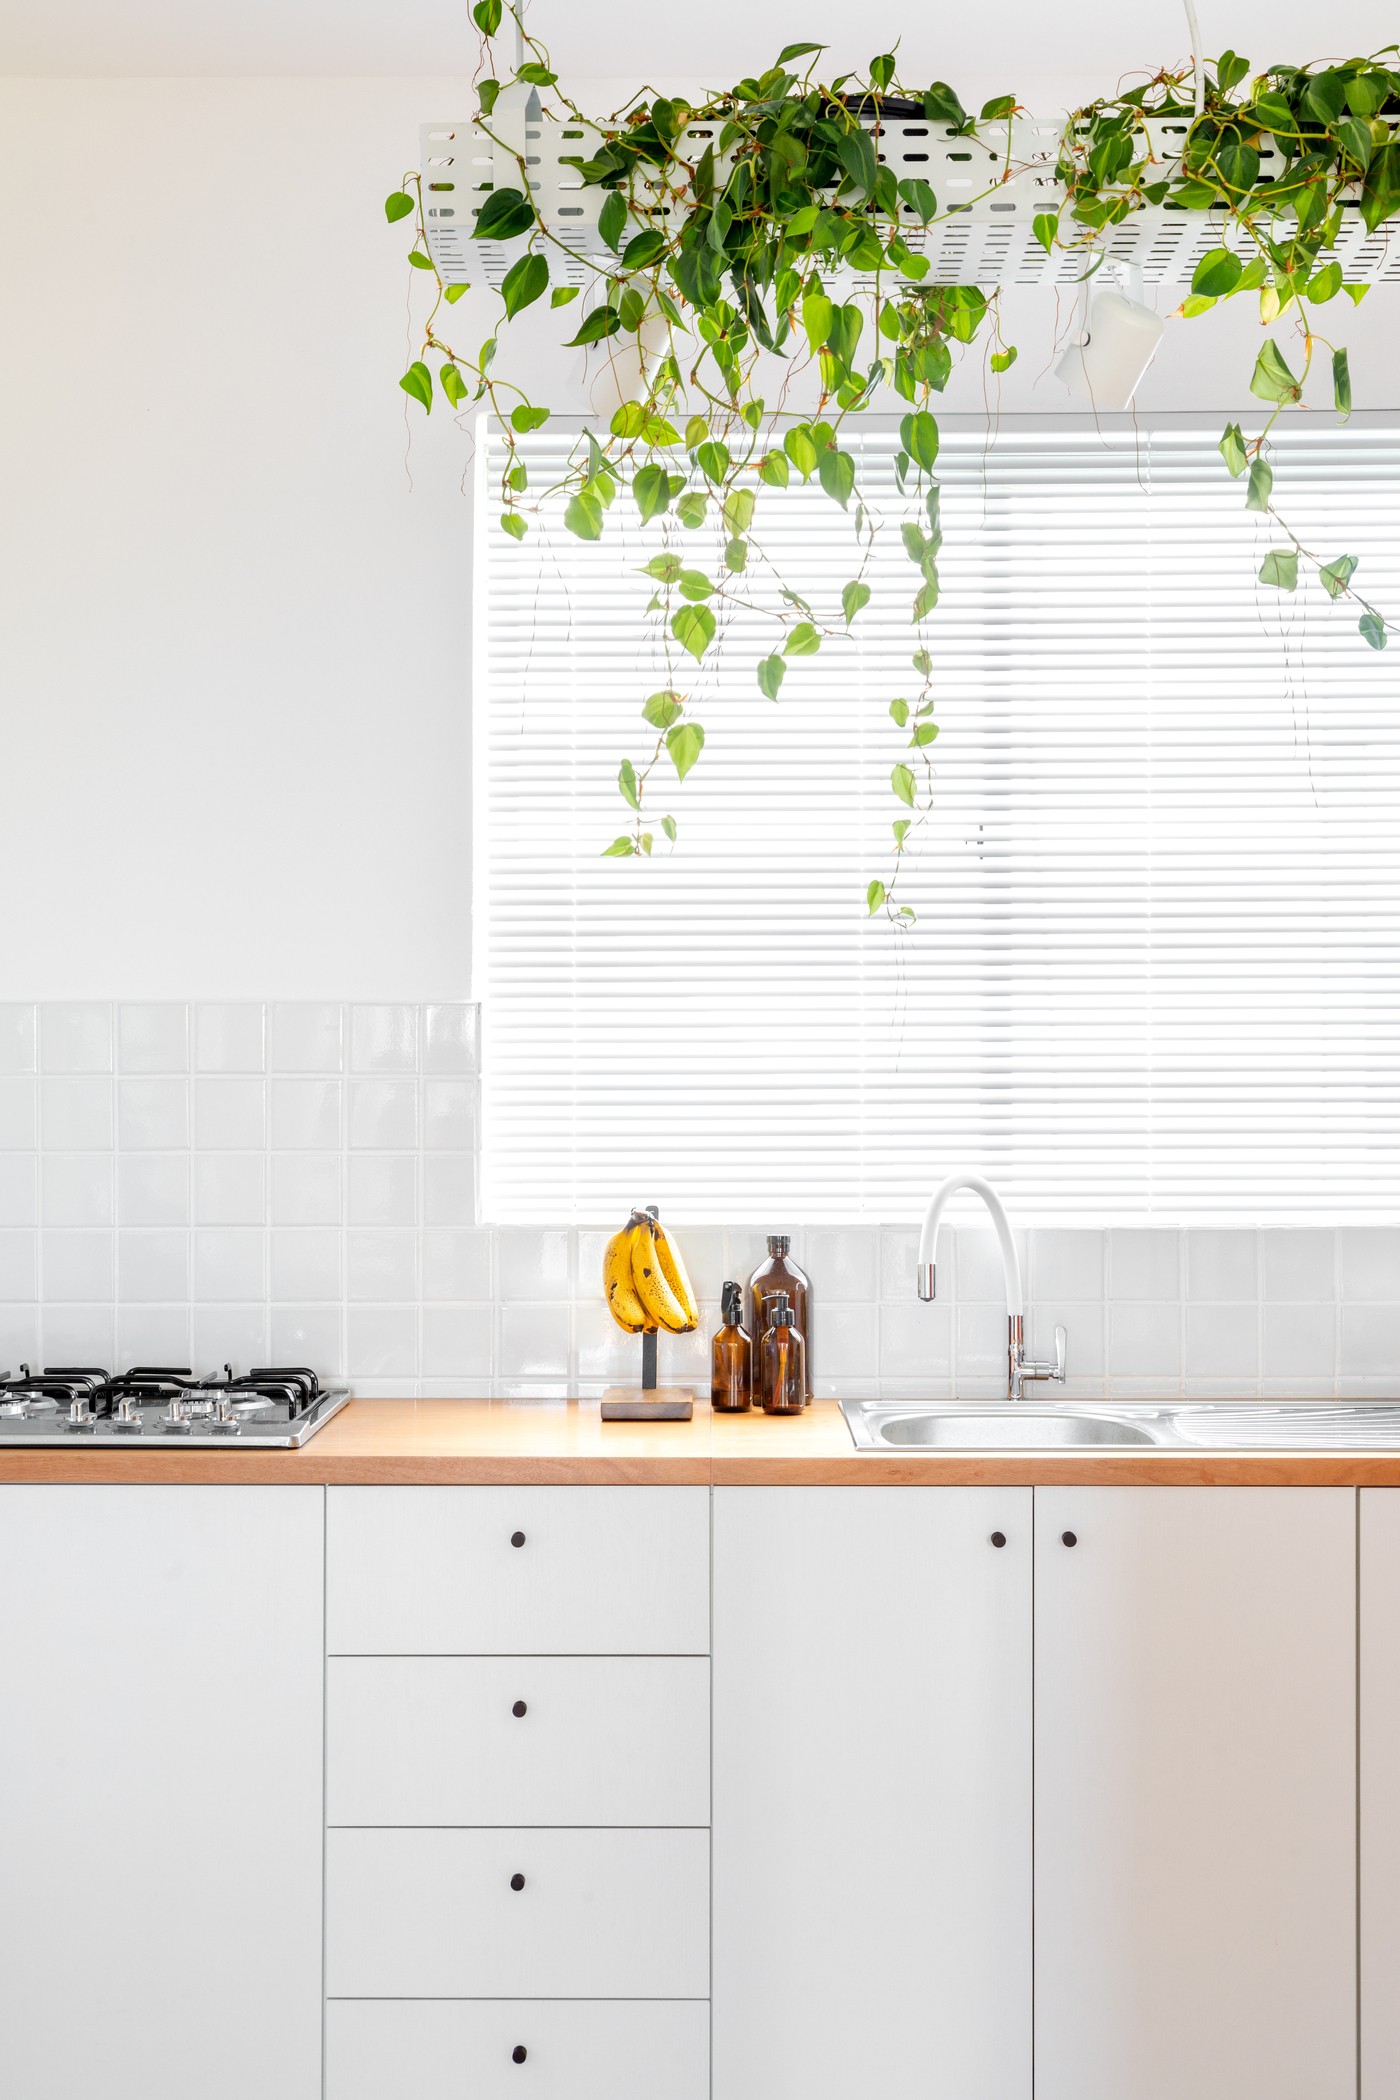 Décor do dia: cozinha branca com prateleira de plantas e ares minimalistas (Foto: Fabio Jr. Severo)